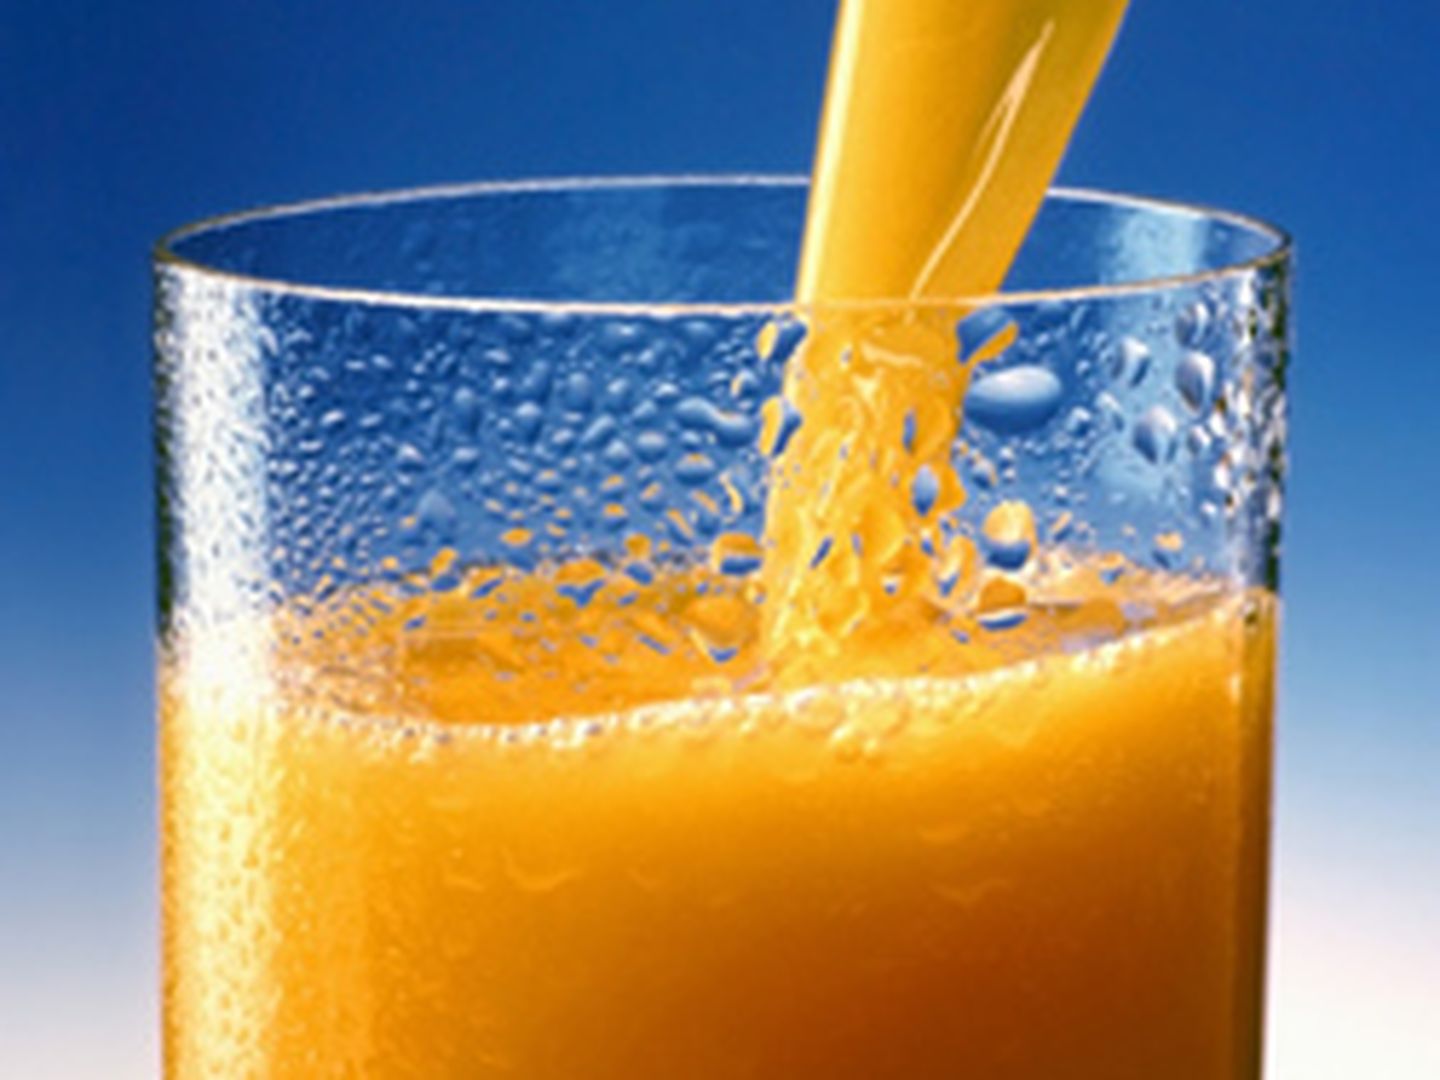 Los zumos de frutas continen altas cantidades de azúcar añadido.